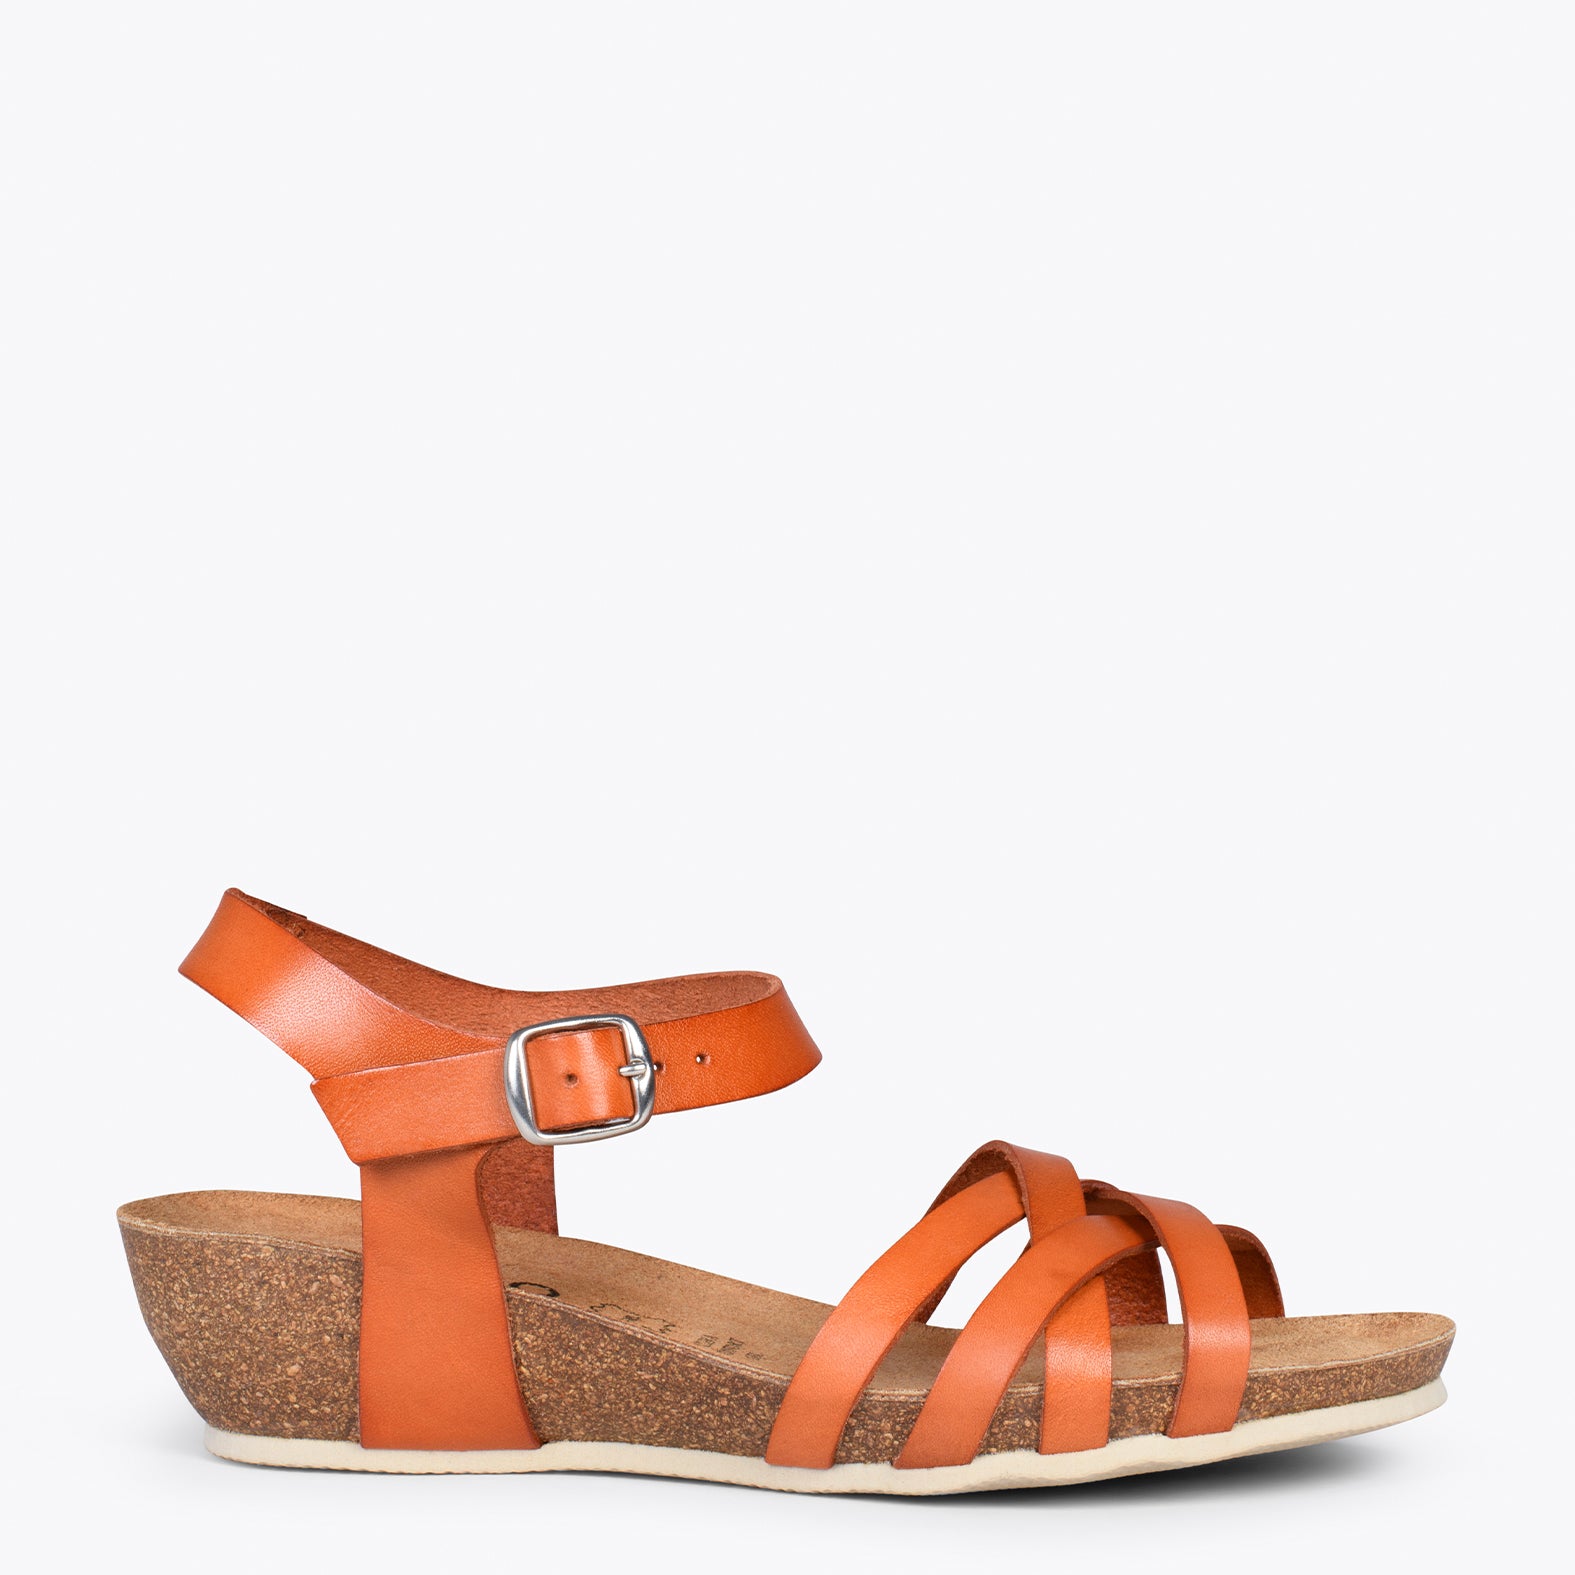 HANAE – ORANGE BIO flat sandals with straps